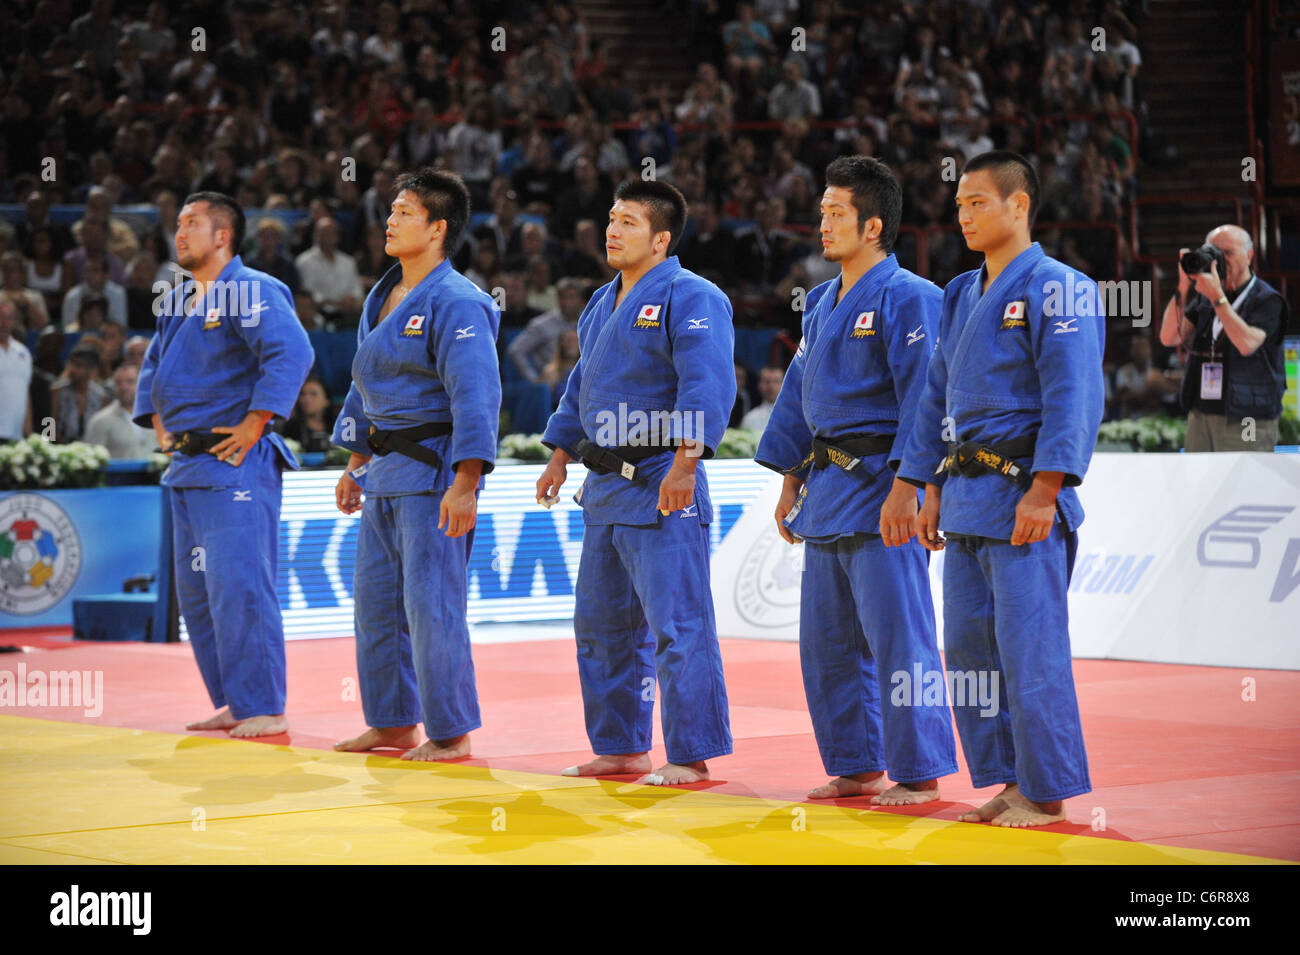 Le Japon (JPN) line-up pour le championnat du monde de judo Paris 2011, l'équipe masculine des compétitions. Banque D'Images